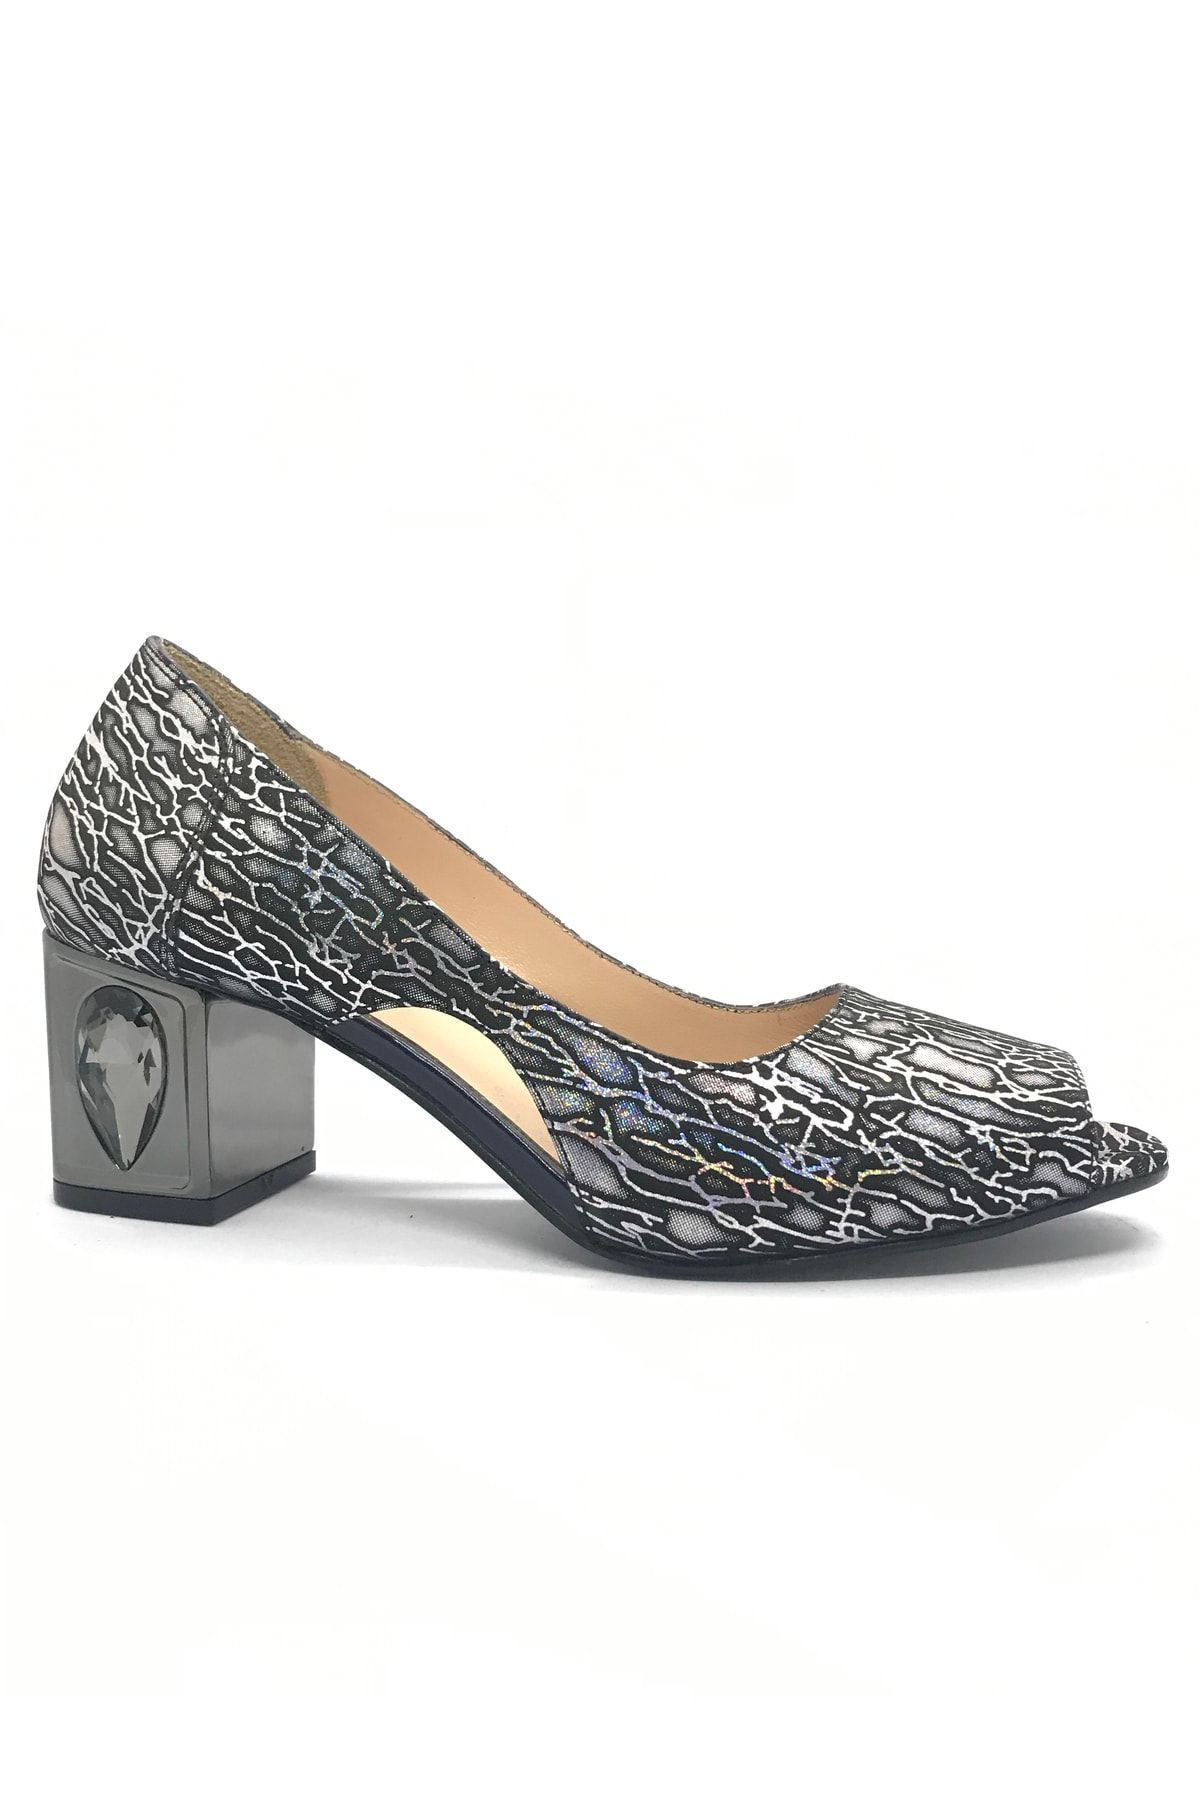 D&A İzland Shoes Kadın Gri Siyah Metalik Karışım Zarif Elmas Ökçeli Hakiki Deri Ayakkabı